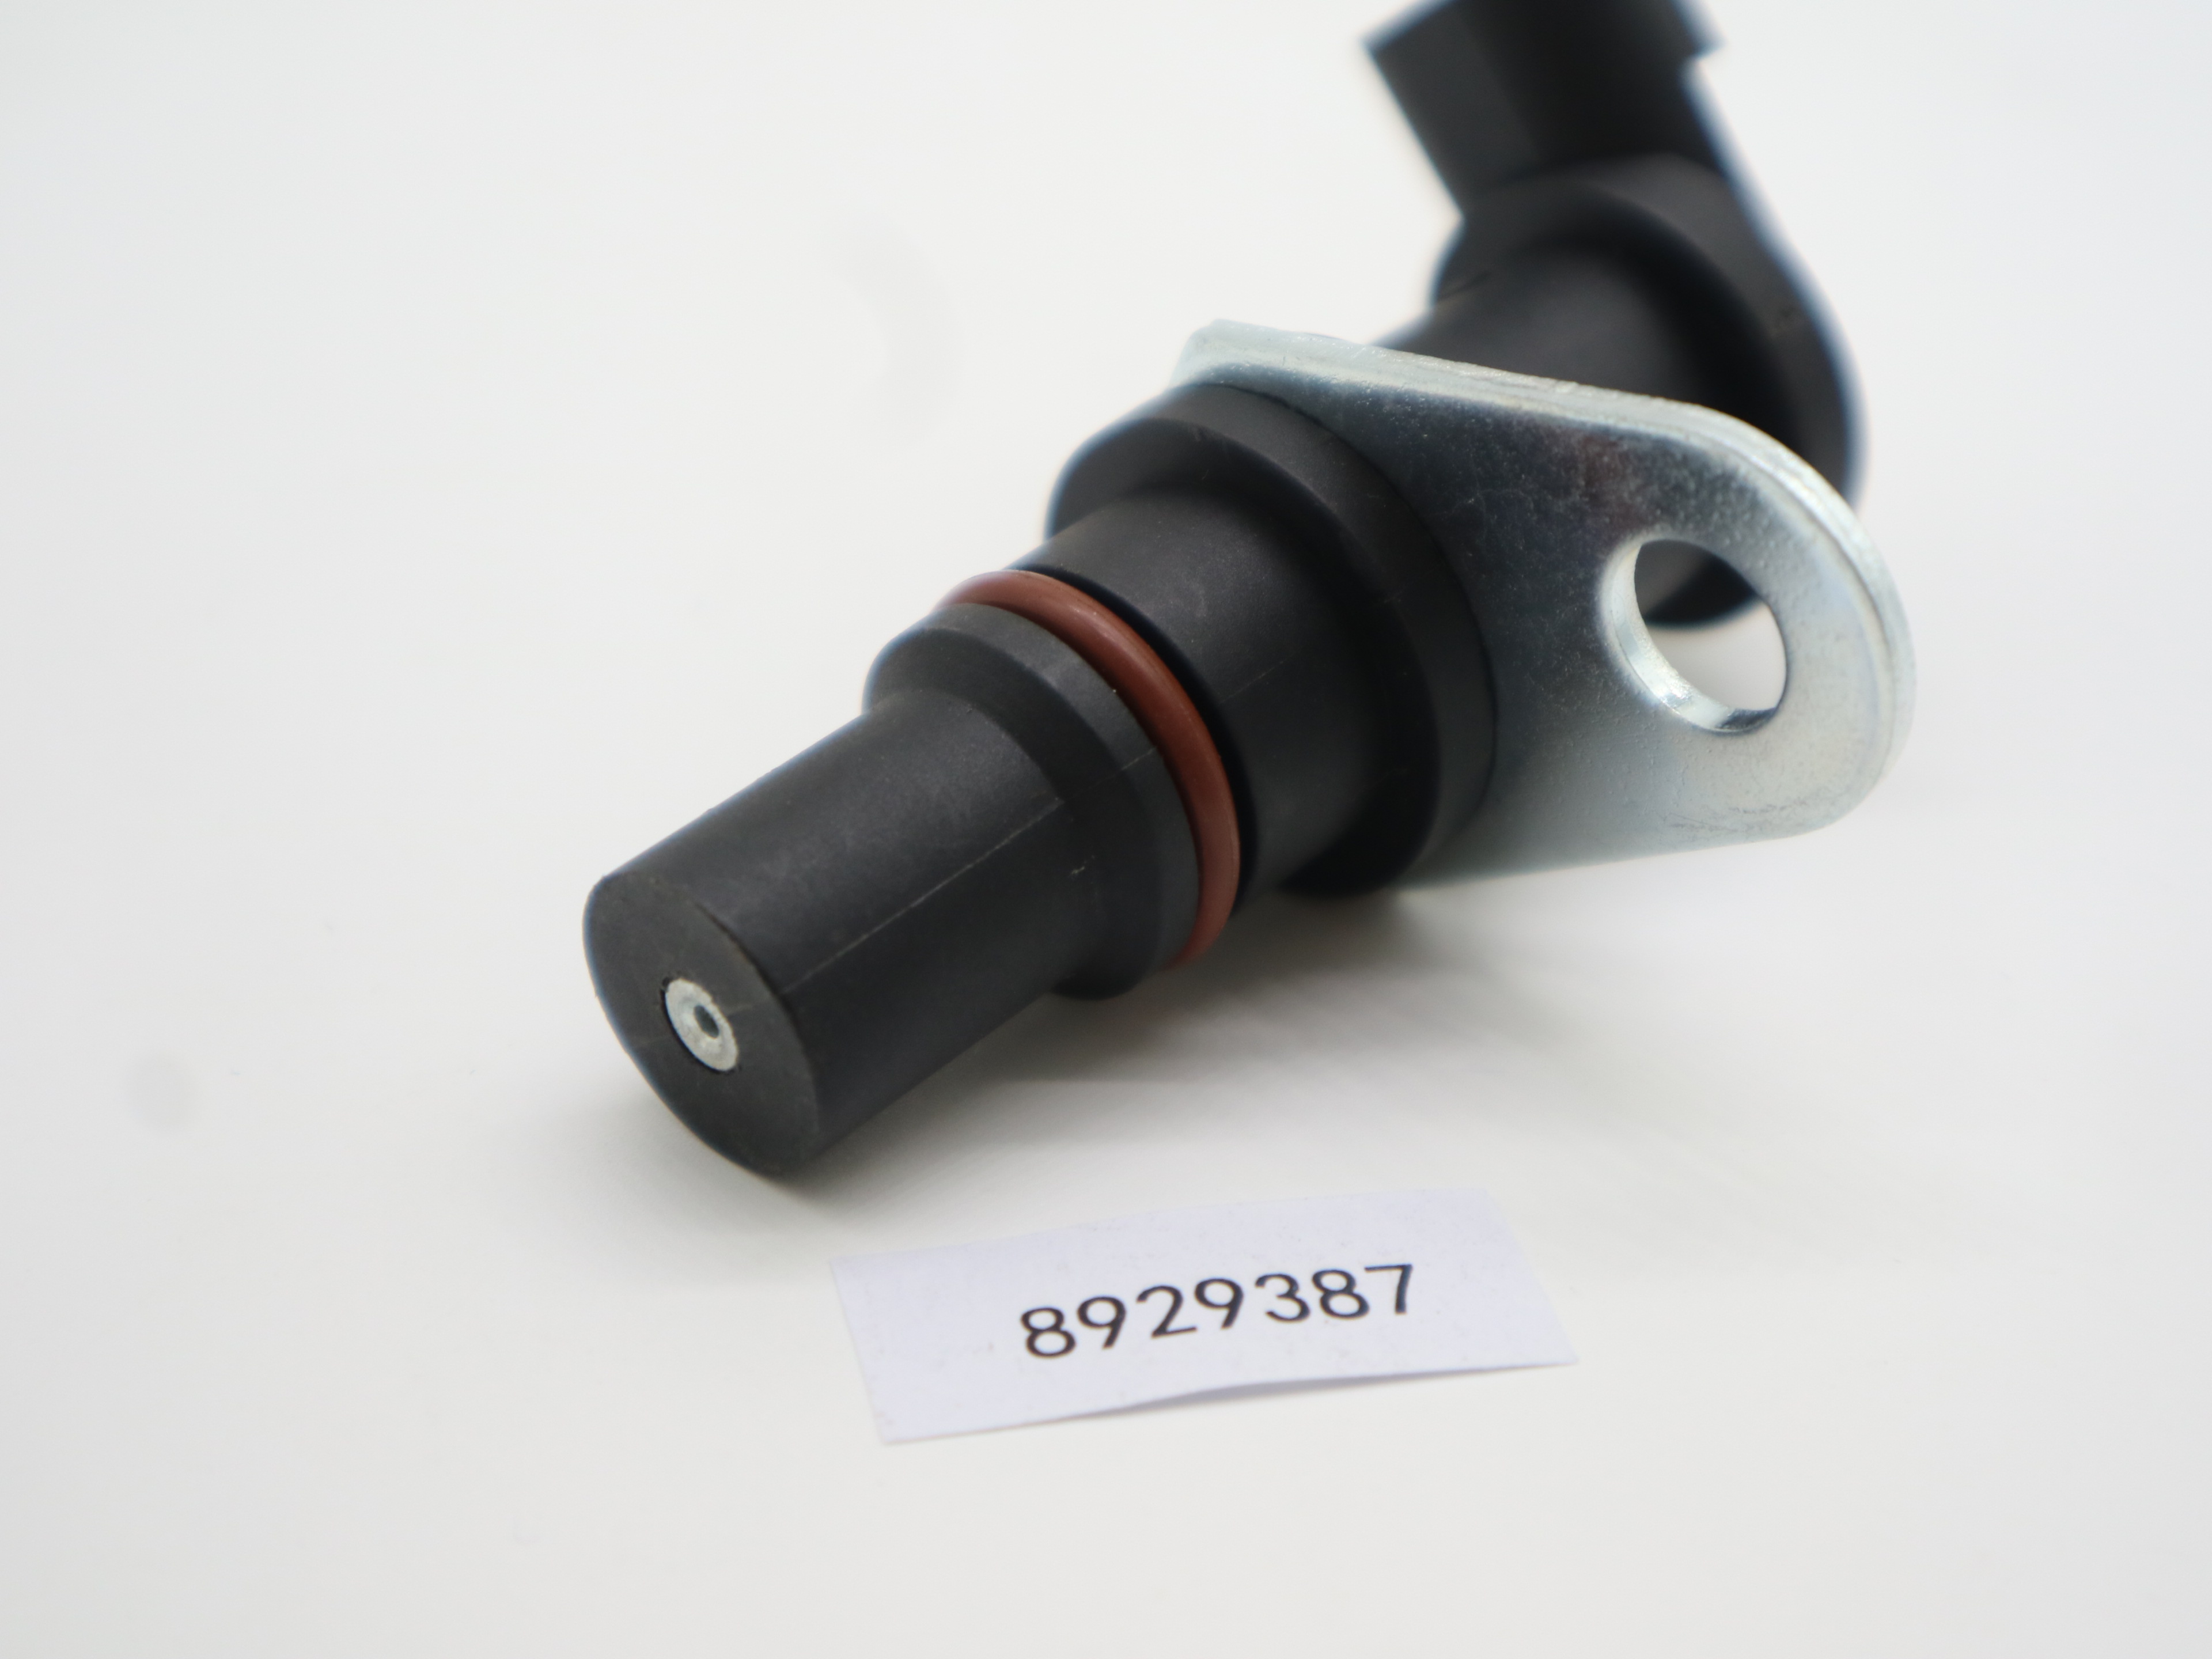 New 8929387 Camshaft Position Sensor For Detroit Diesel Series P/N 60 DDE S60